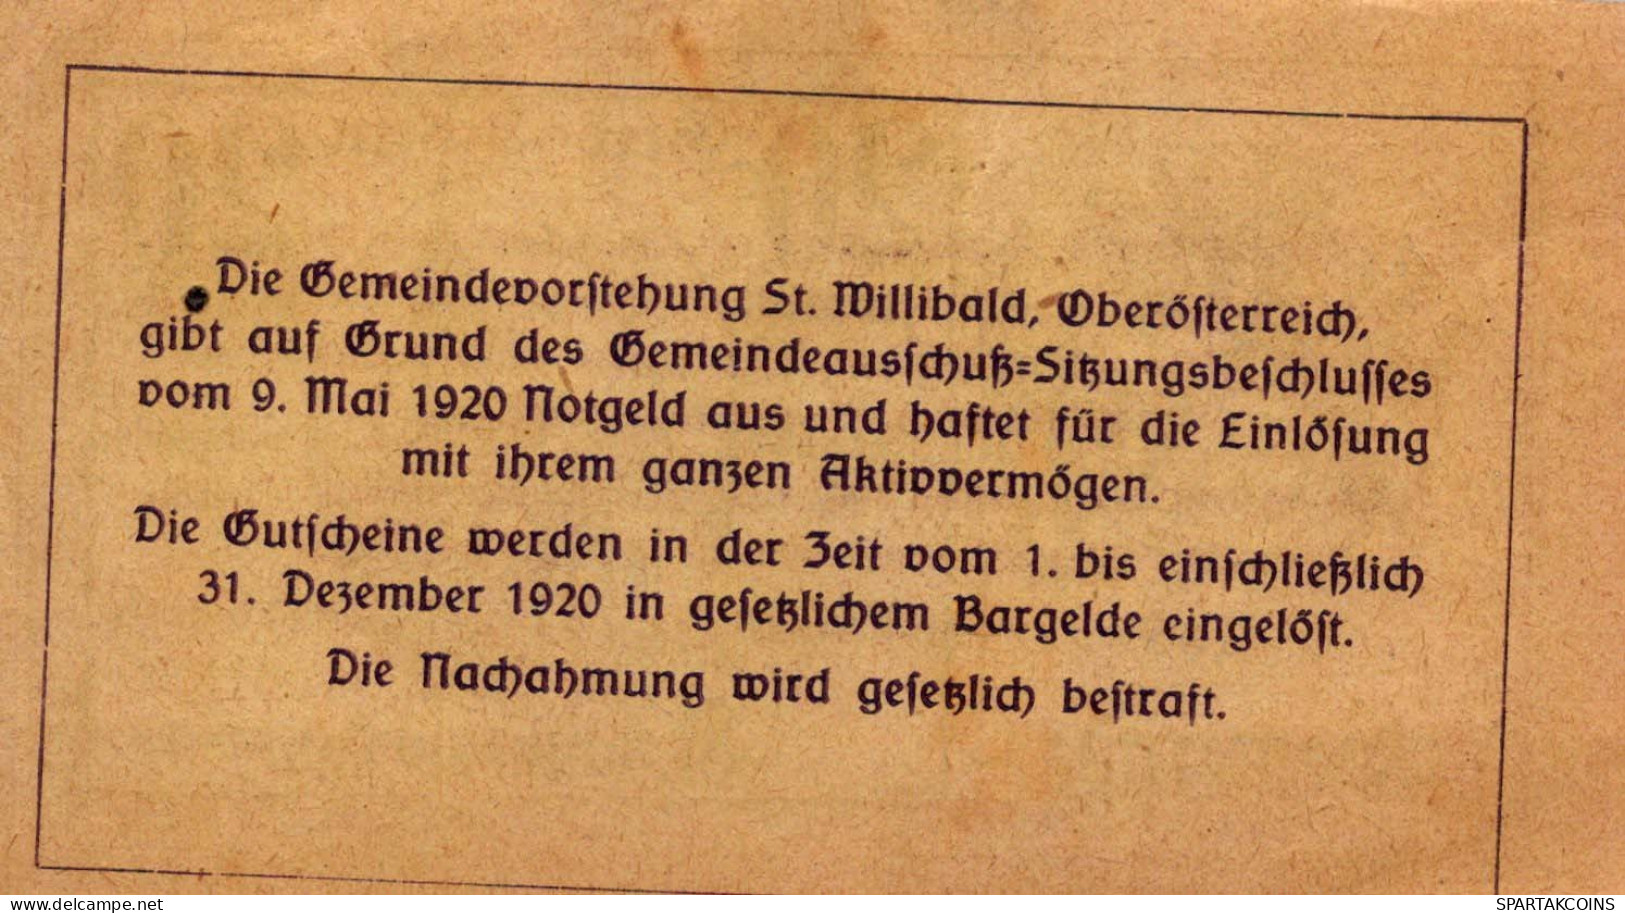 20 HELLER 1920 Stadt SANKT WILLIBALD Oberösterreich Österreich Notgeld #PF916 - [11] Emissions Locales